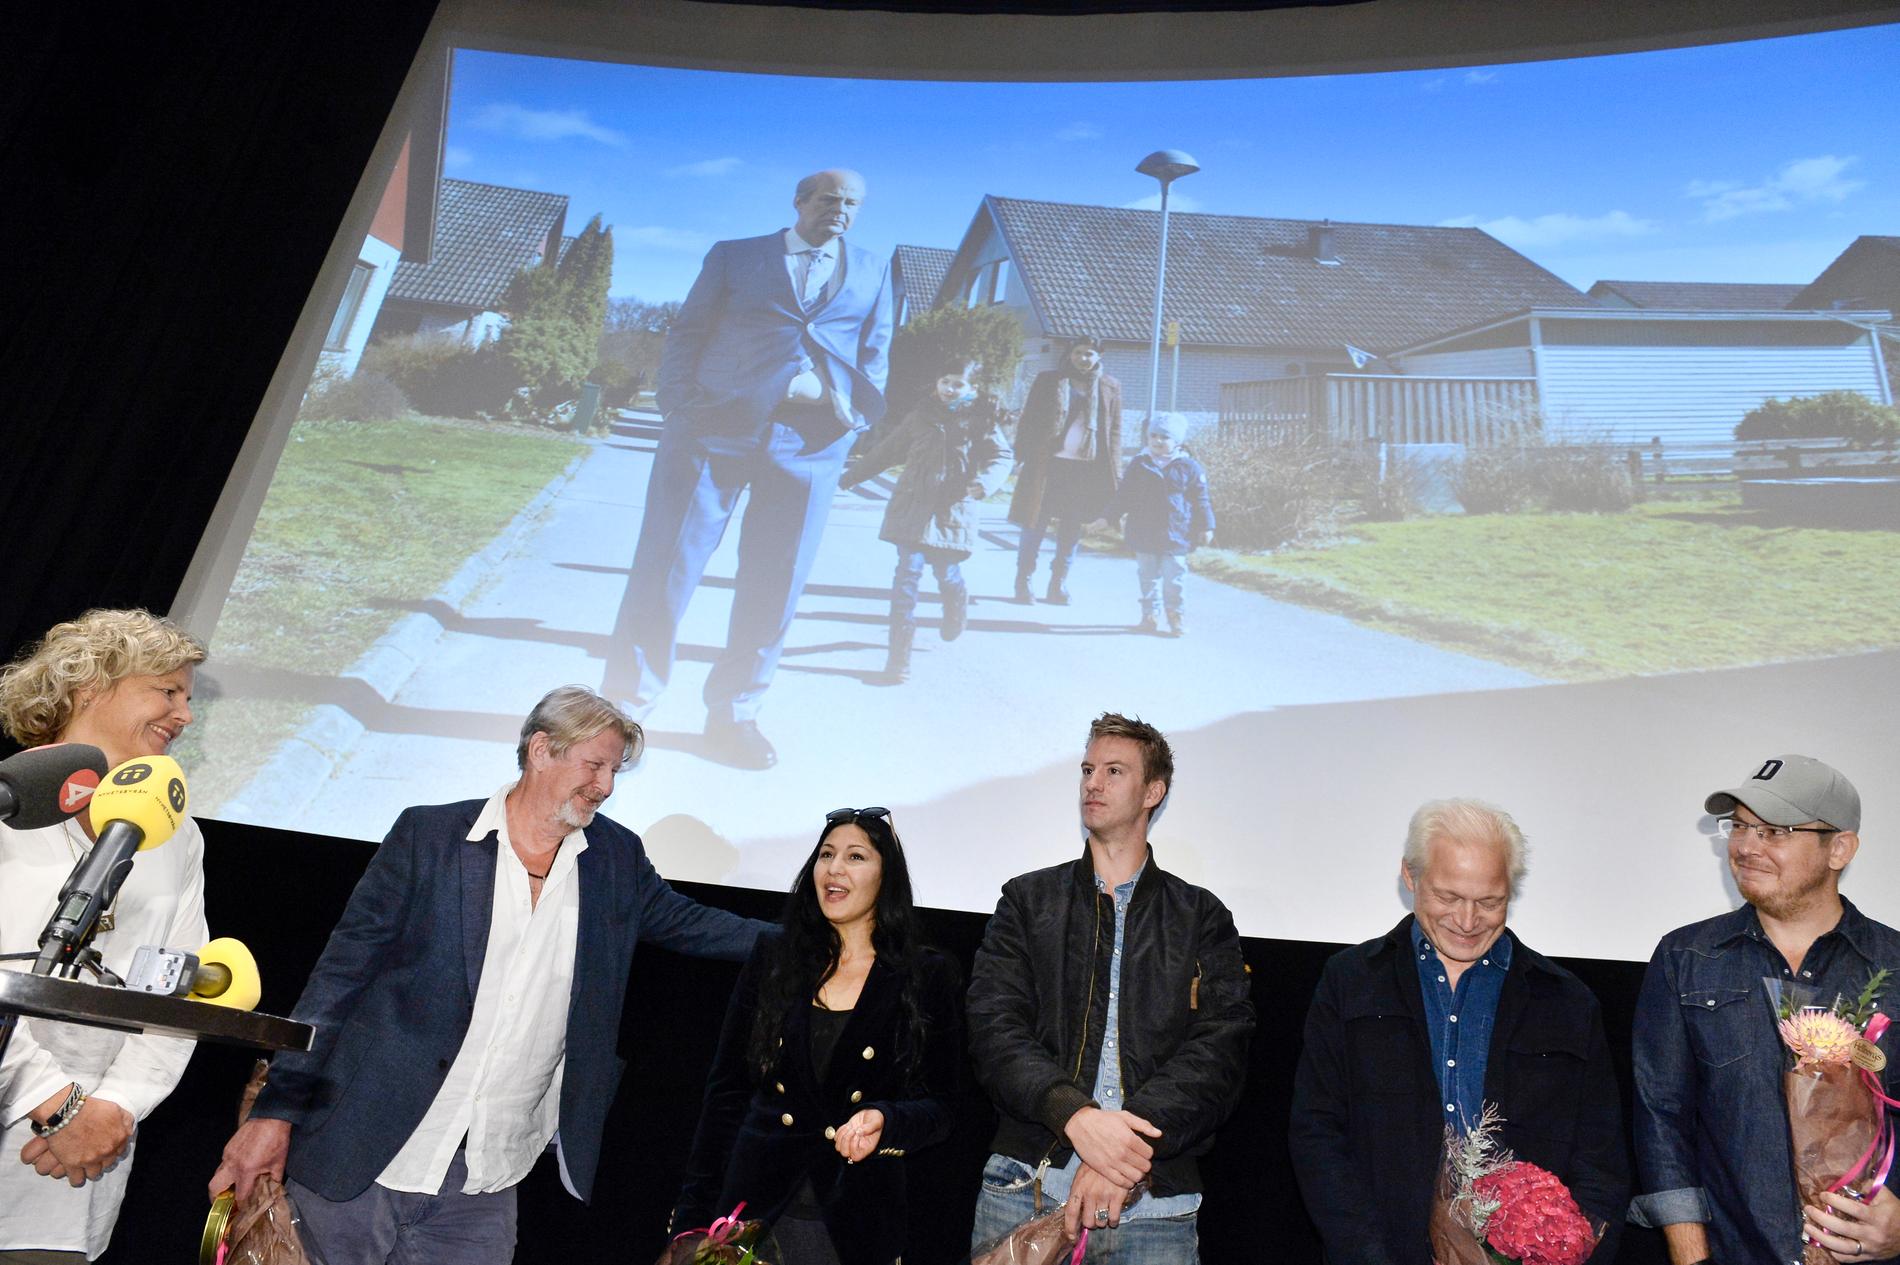 Skådespelarna Rolf Lassgård, Banar Pars, Filip Berg, regissören Hannes Holm och författaren fredrik Backman under en pressträff med svenska filminstitutet.